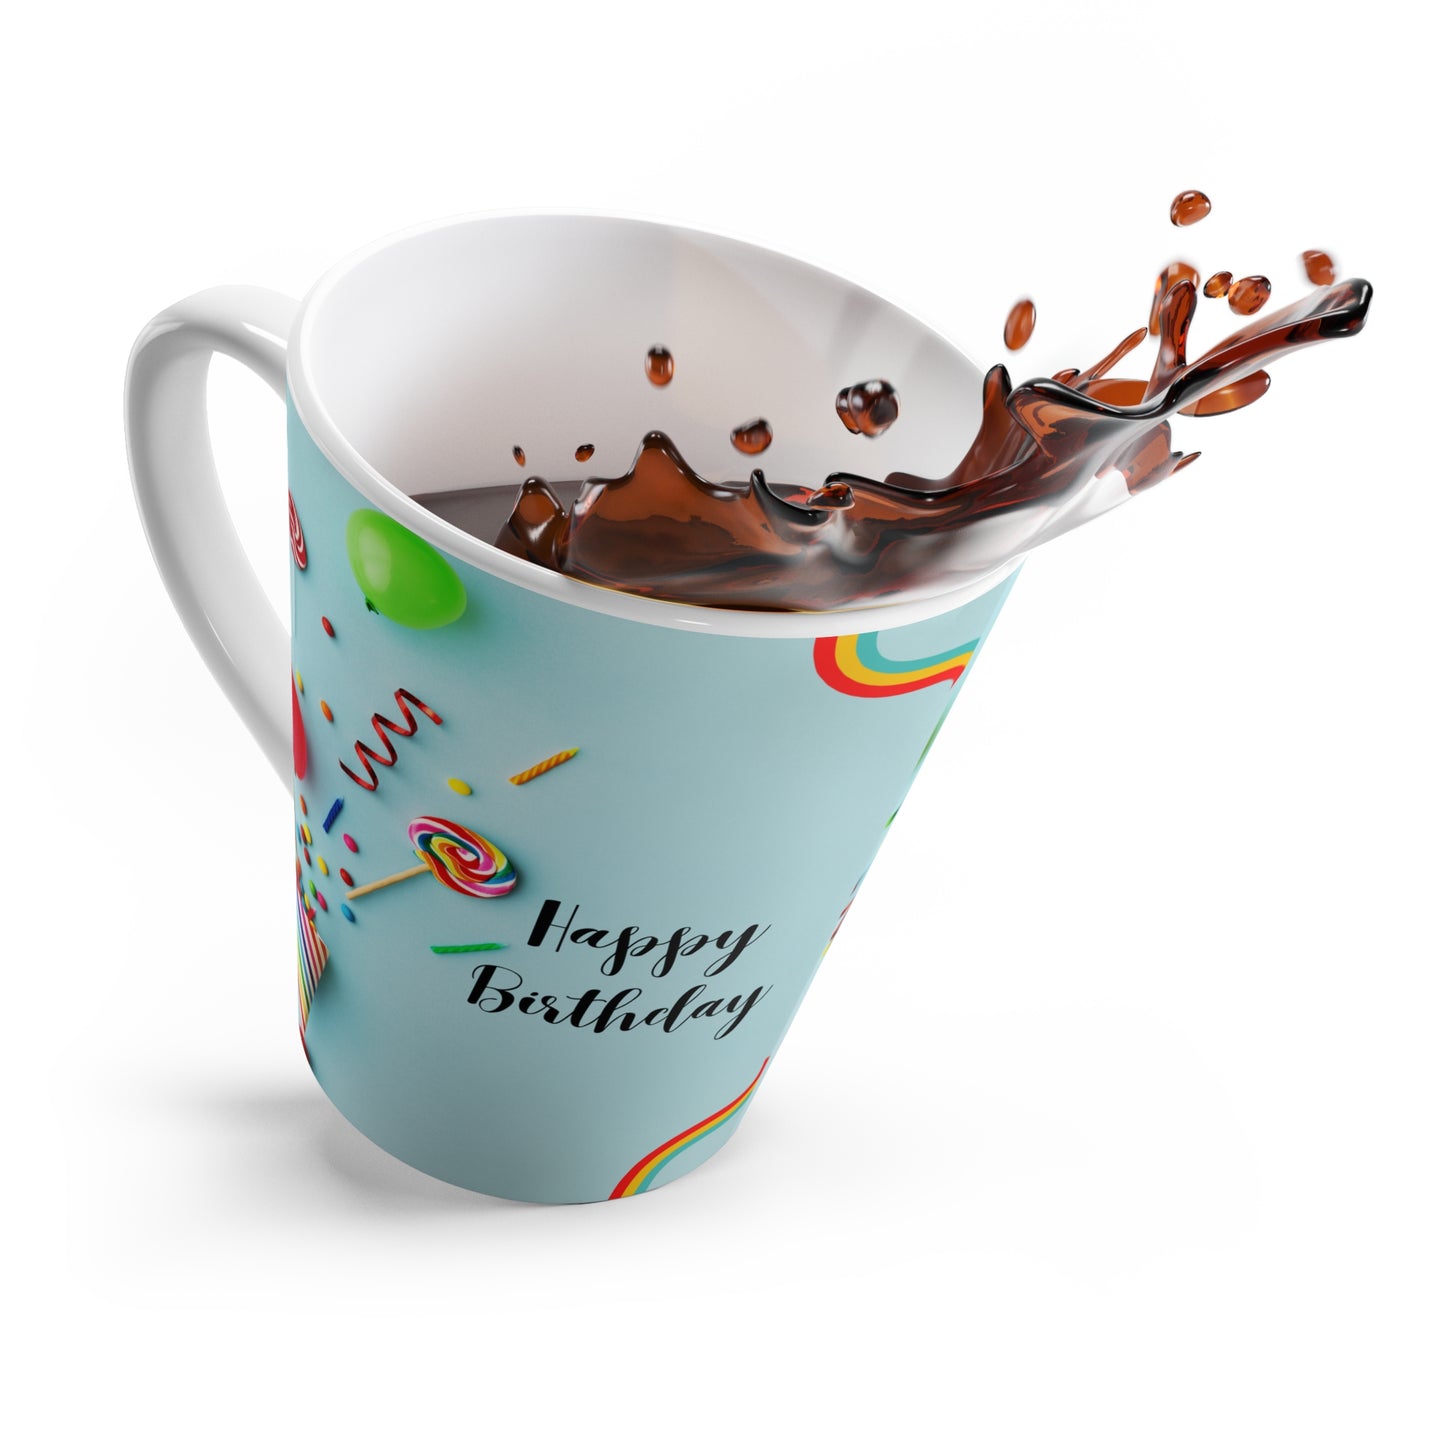 Happy Birthday Latte Mug, 12oz, Sky Blue